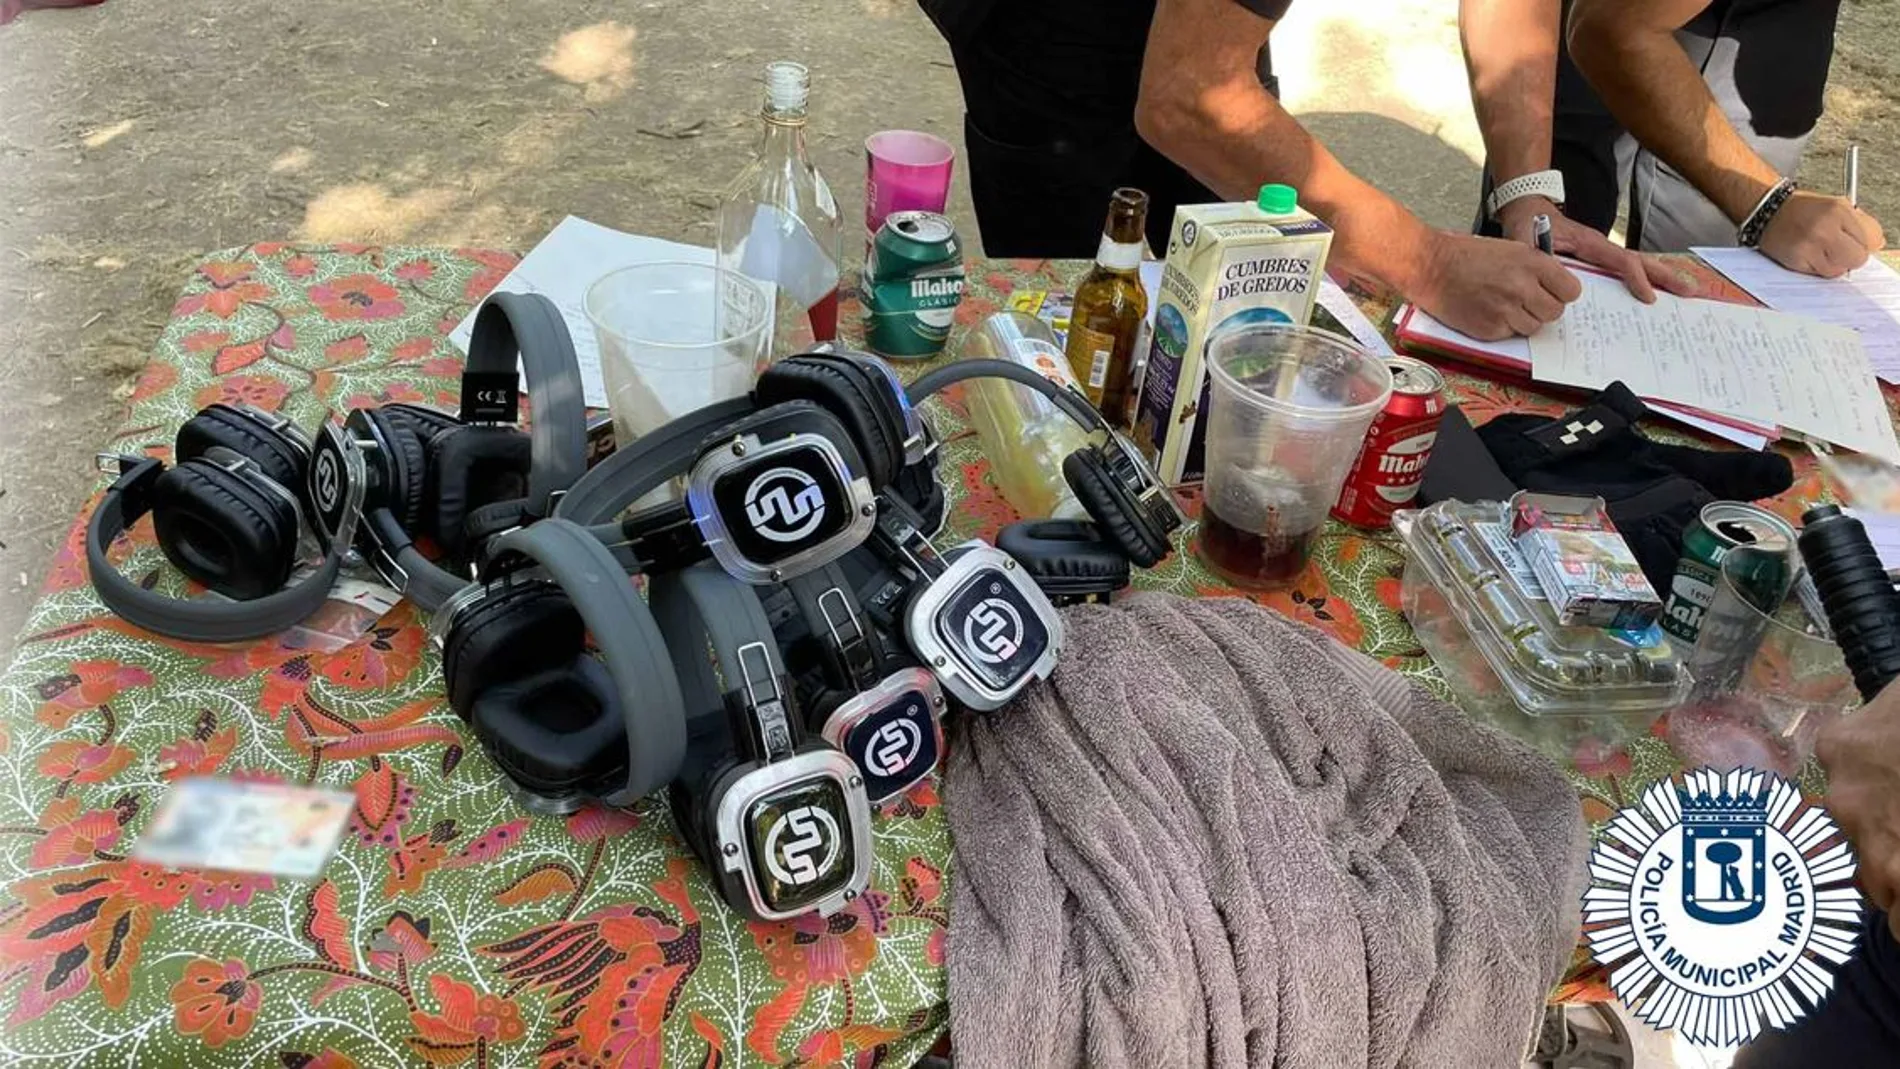 Desmantelan una rave ilegal en Casa de Campo (Madrid) con treinta personas con auriculares conectados a una mesa de mezclas